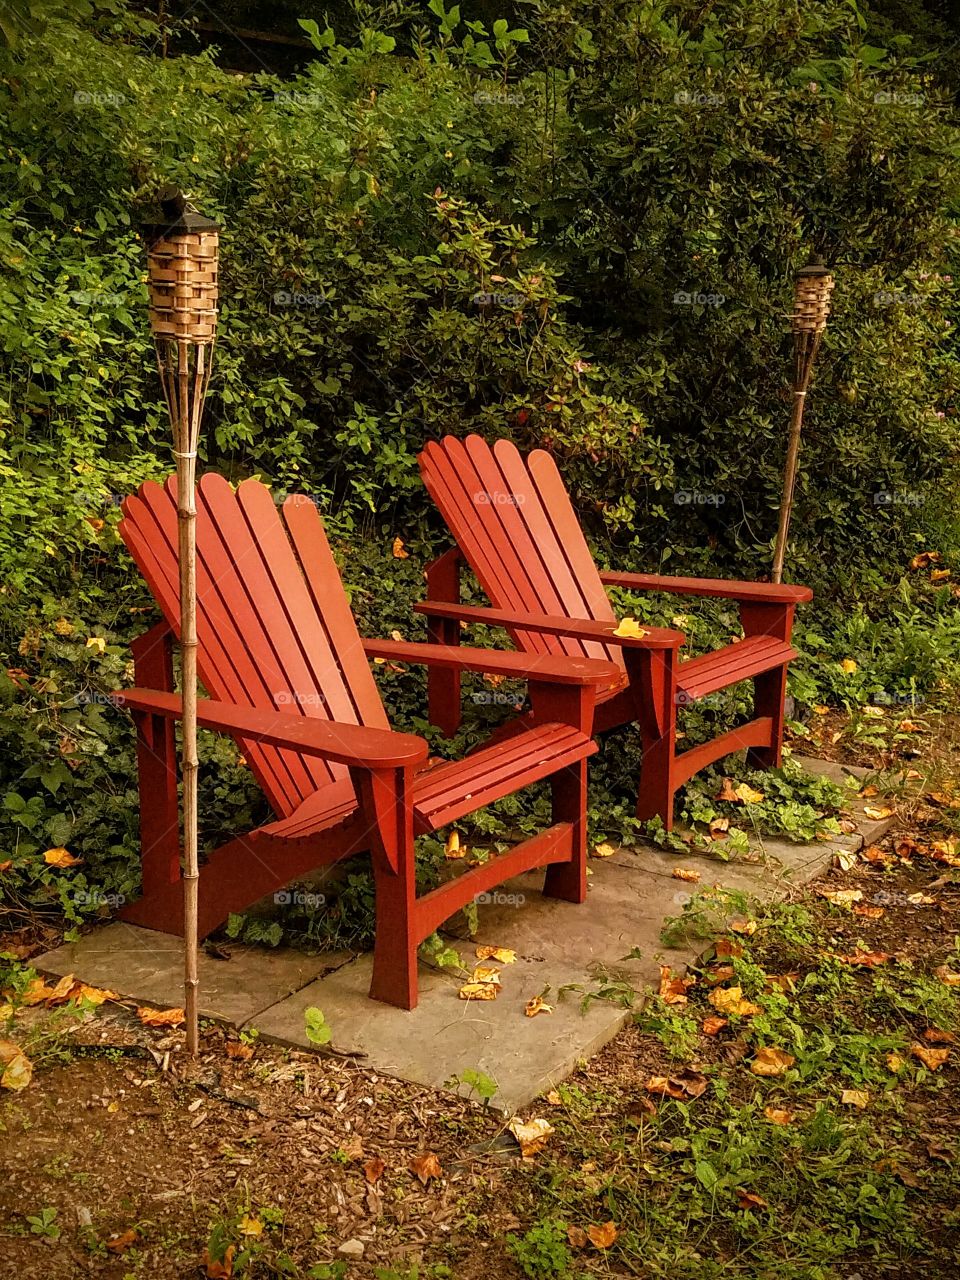 Adirondack Chairs in Garden